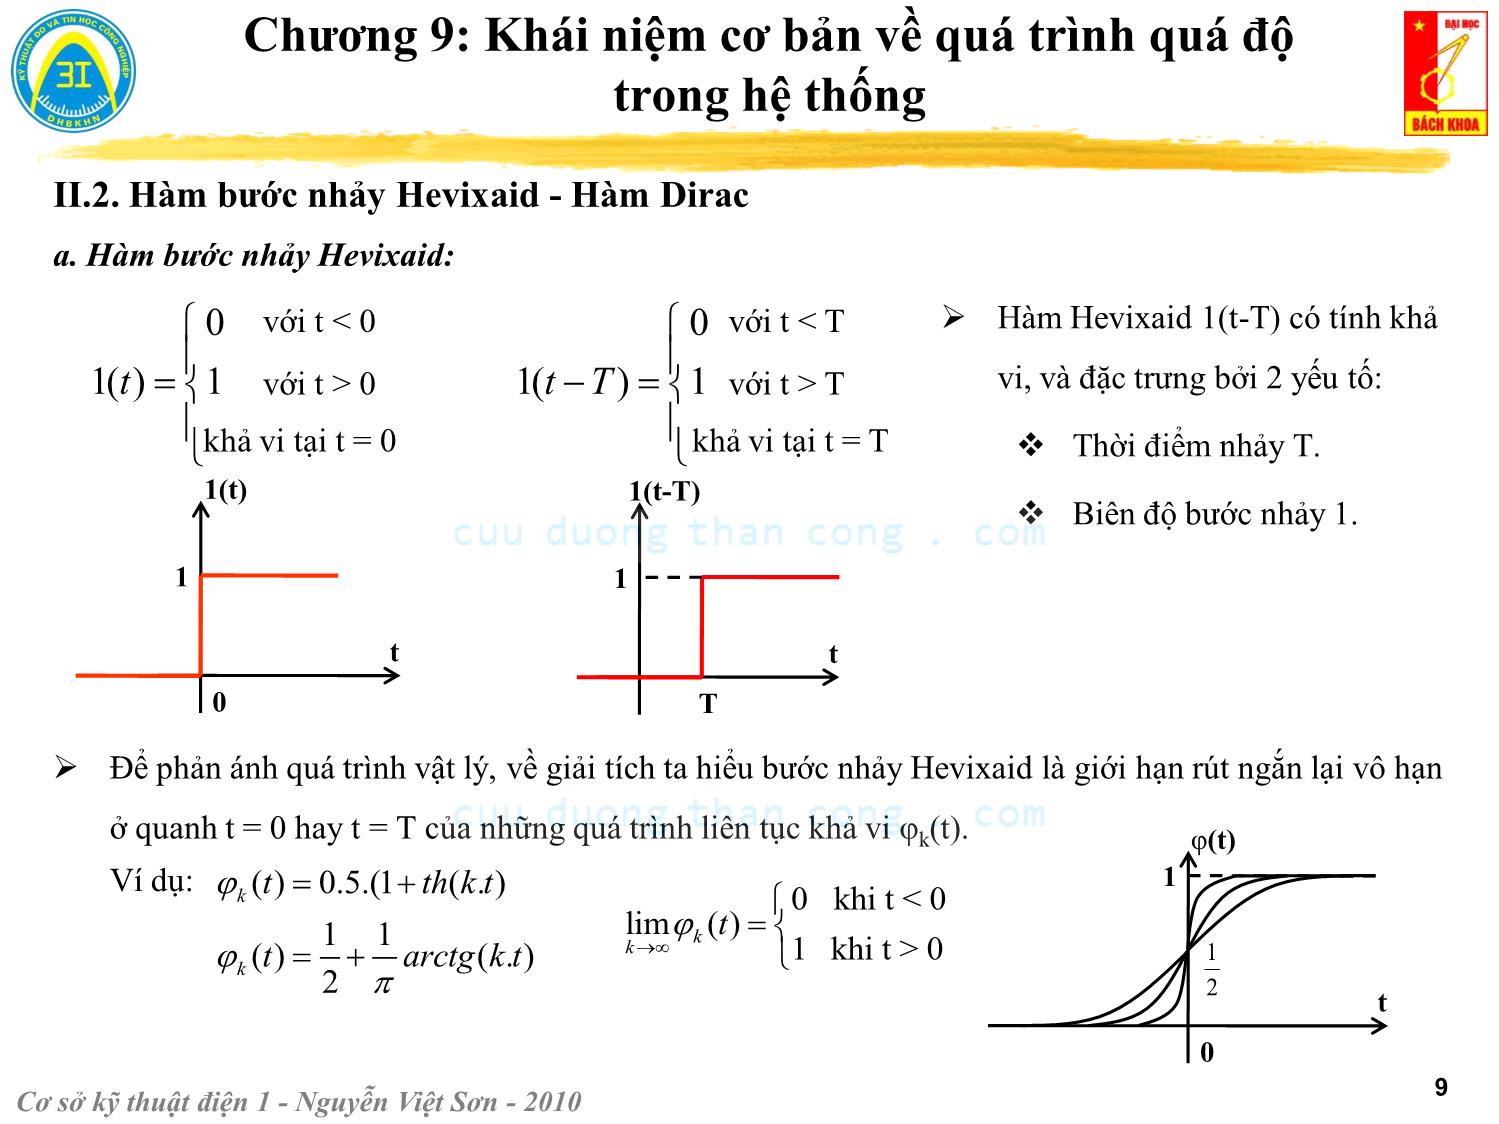 Bài giảng Kỹ thuật điện 1 - Chương 9: Khái niệm cơ bản về quá trình quá độ trong hệ thống - Nguyễn Việt Sơn trang 9